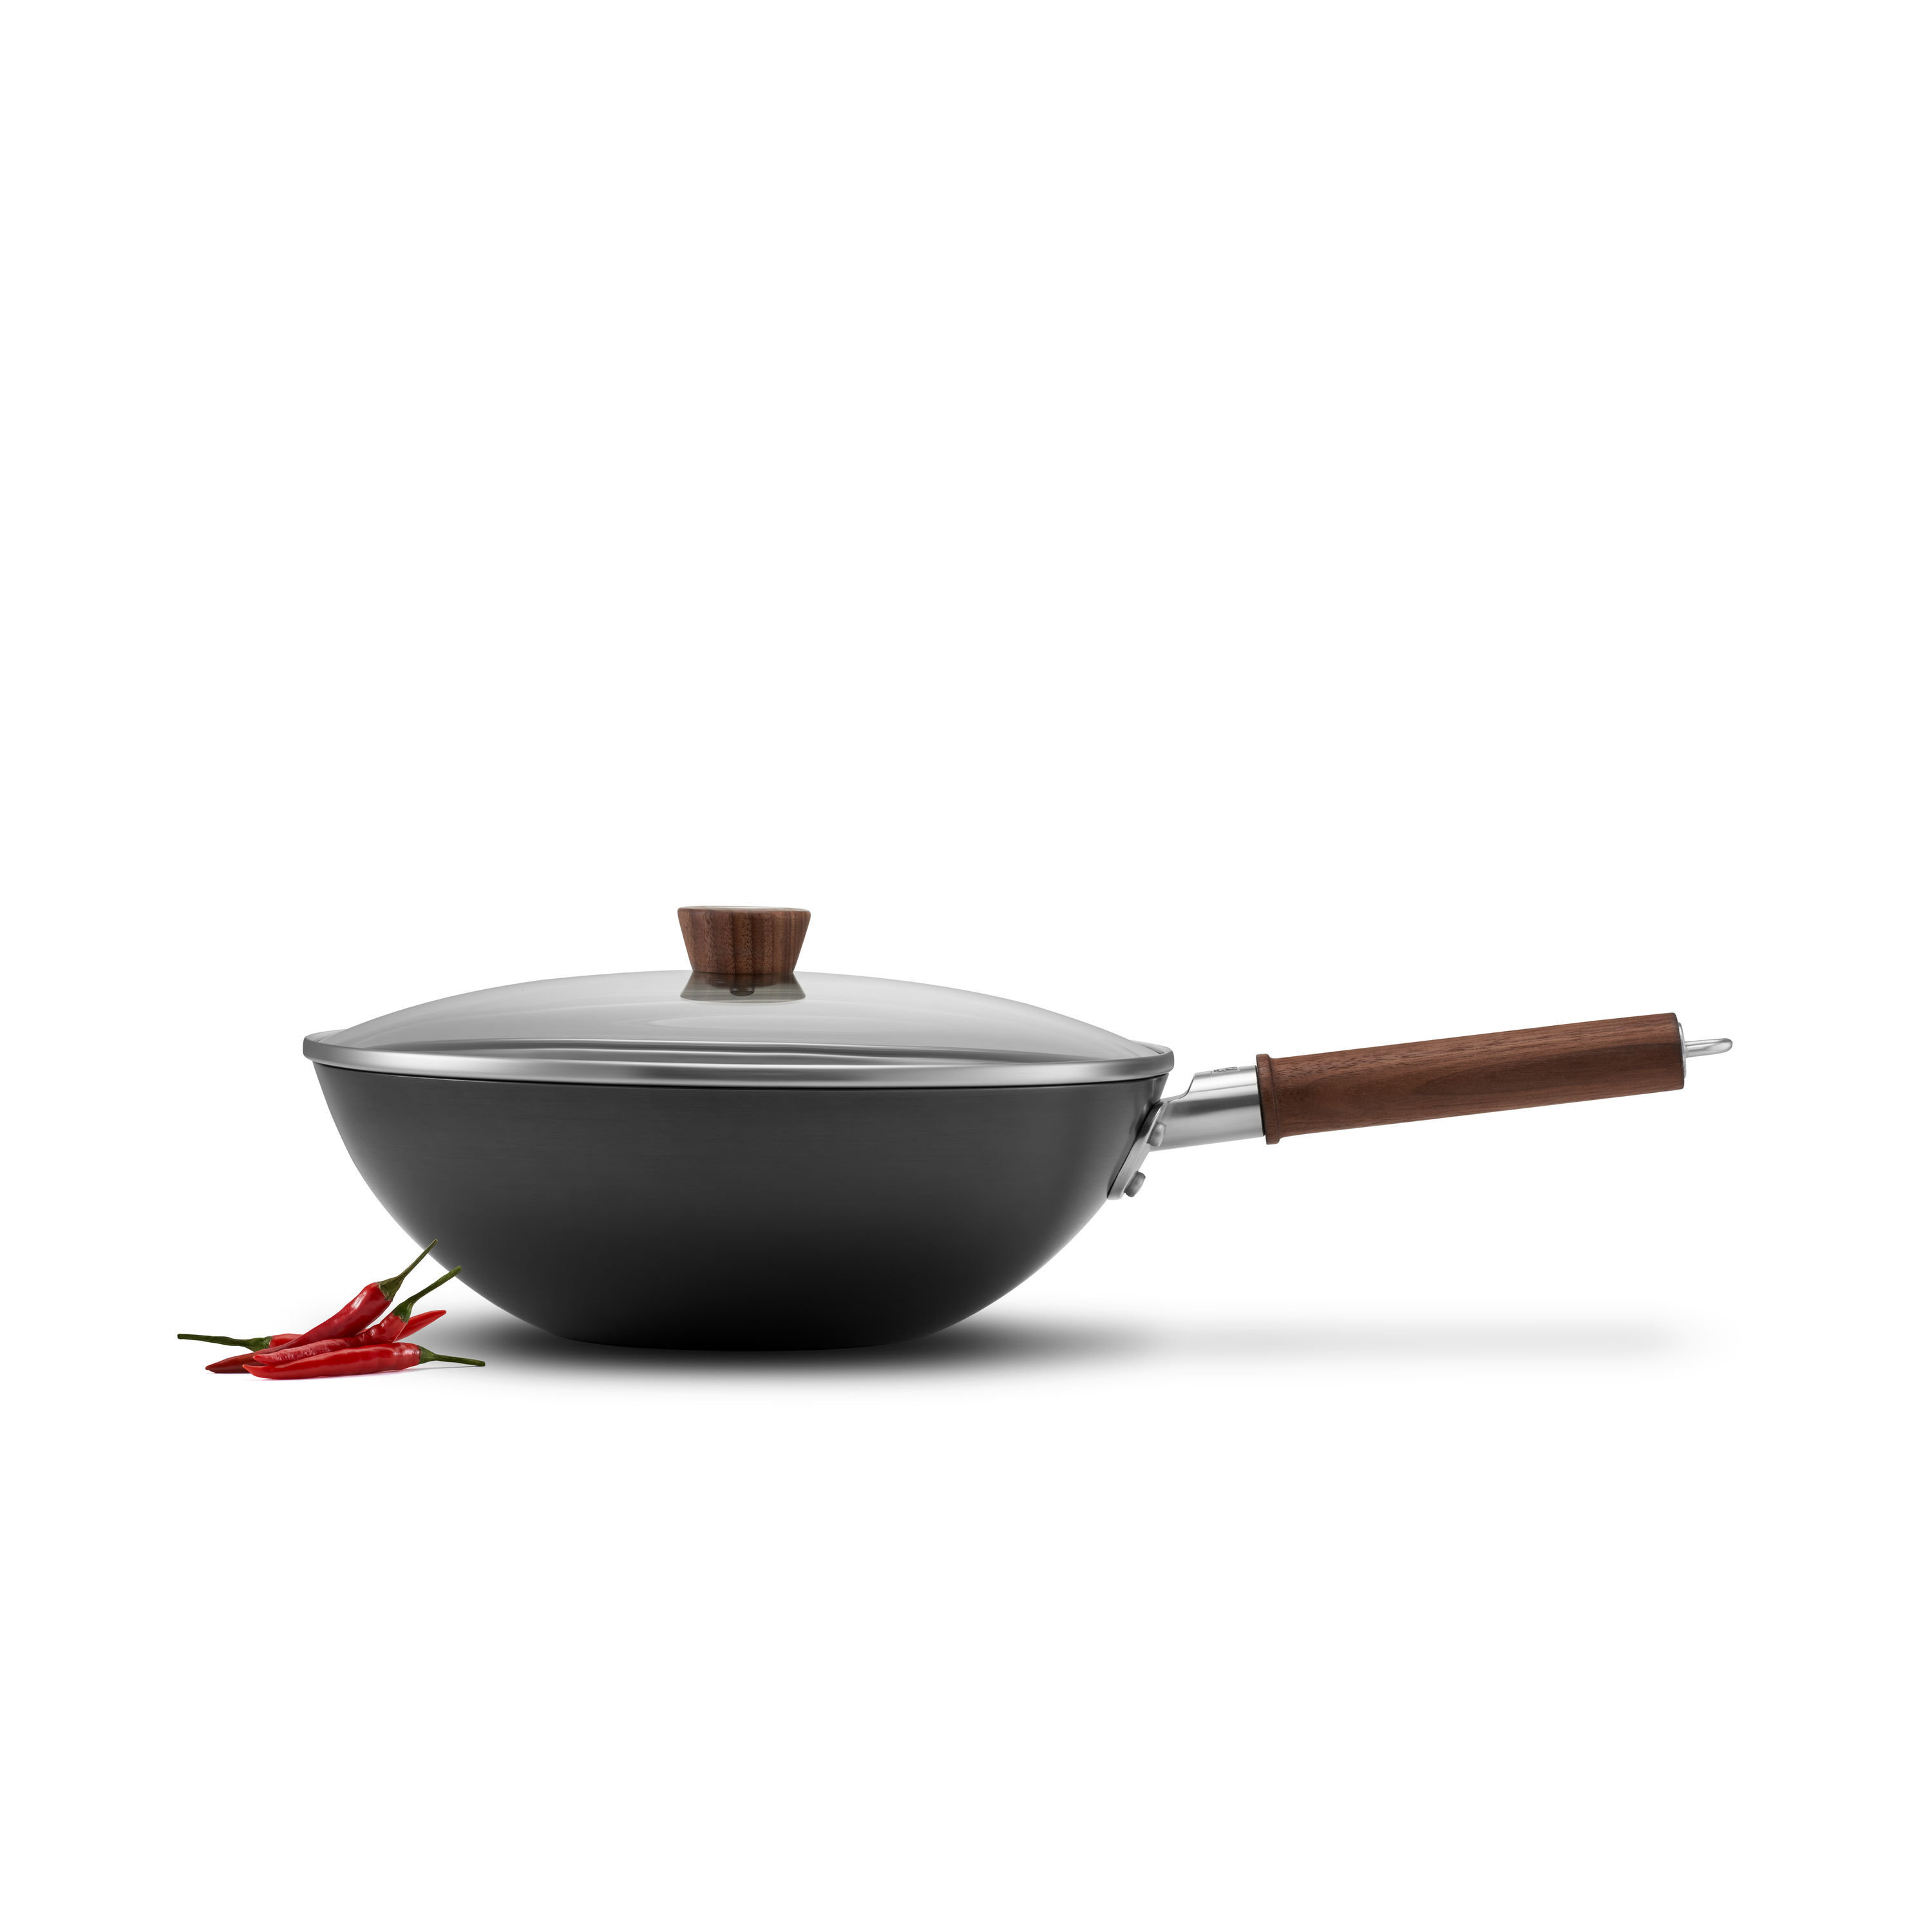 SKY LIGHT Wok Pan with Lid, 12-inch Nonstick Stir Fry Pan, 100